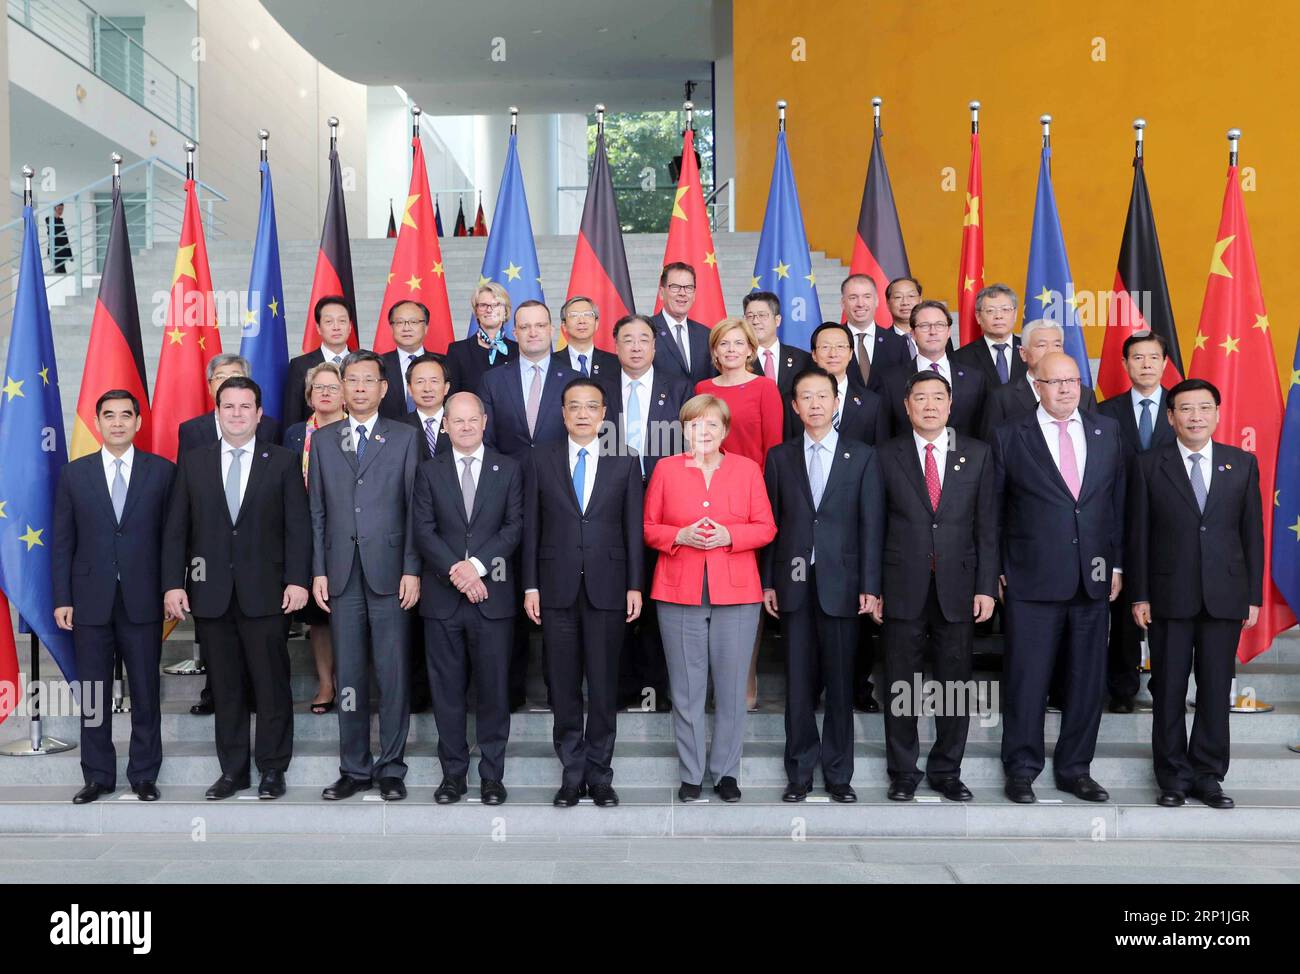 (180709) -- BERLINO, 9 luglio 2018 -- il Premier cinese li Keqiang (5° L, fronte) e il cancelliere tedesco Angela Merkel (5° R, fronte) si pongono per una foto di gruppo con i rappresentanti che partecipano al quinto round di consultazioni intergovernative, co-presieduti dai due leader, a Berlino, Germania, 9 luglio 2018. ) (LMM) GERMANIA-BERLINO-CINA-LI KEQIANG-ANGELA MERKEL-CONSULTAZIONI INTERGOVERNATIVE LIUXWEIBING PUBLICATIONXNOTXINXCHN Foto Stock